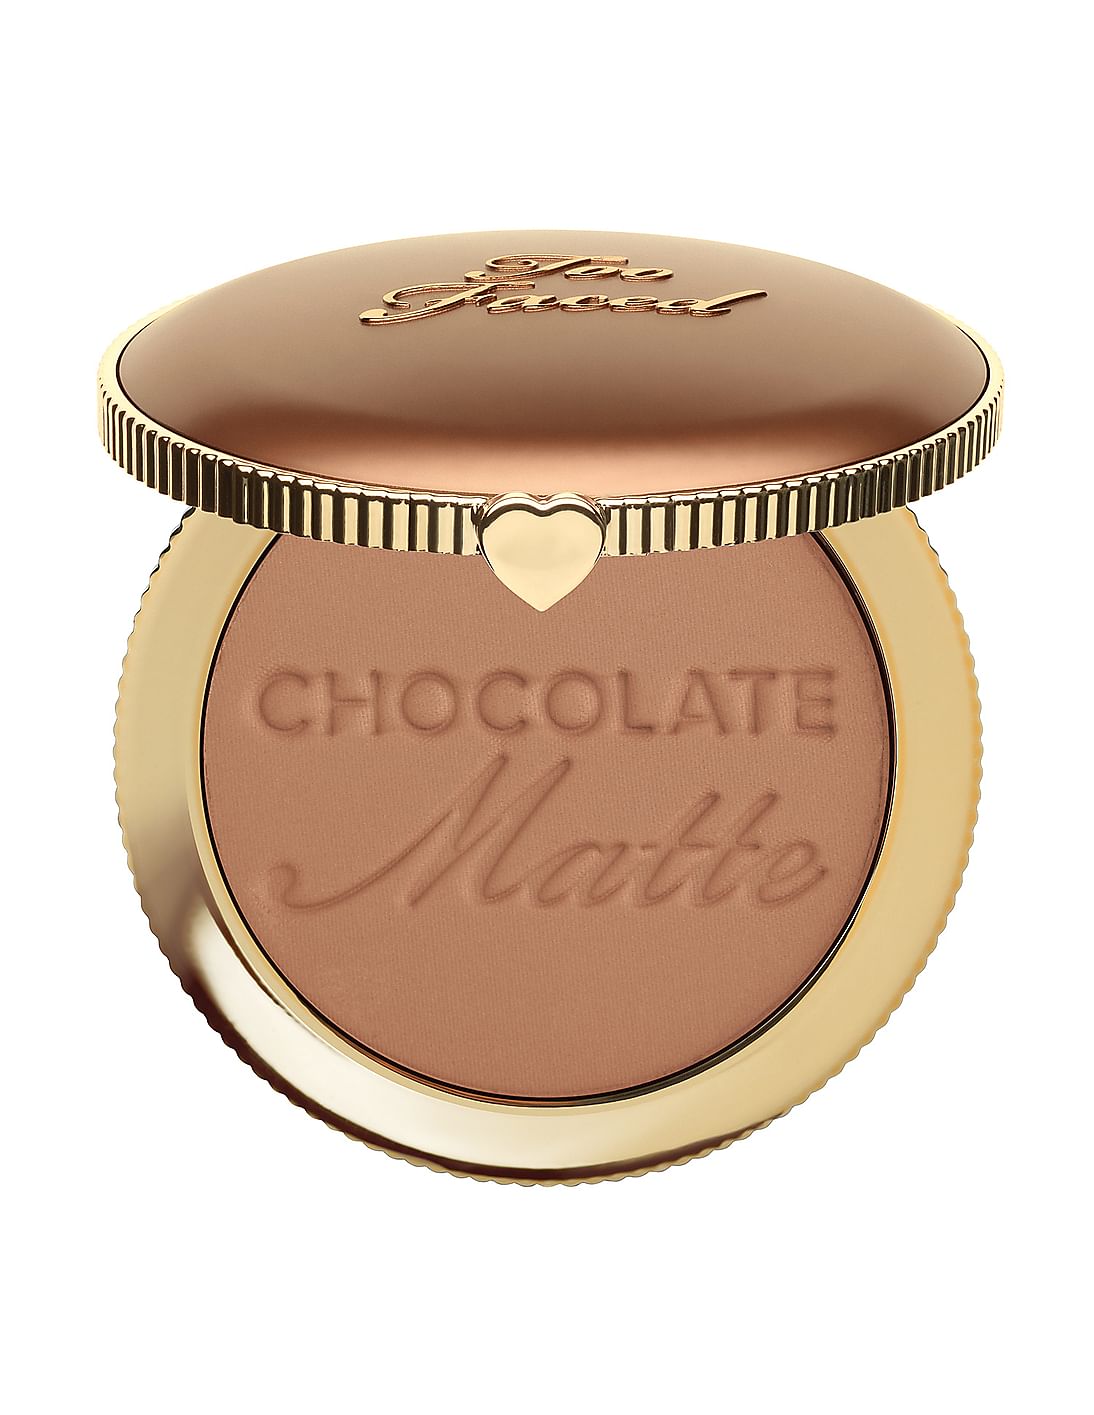 TOO FACED Chocolate Soleil Matte Bronzer - Chocolate Soleil - 8G